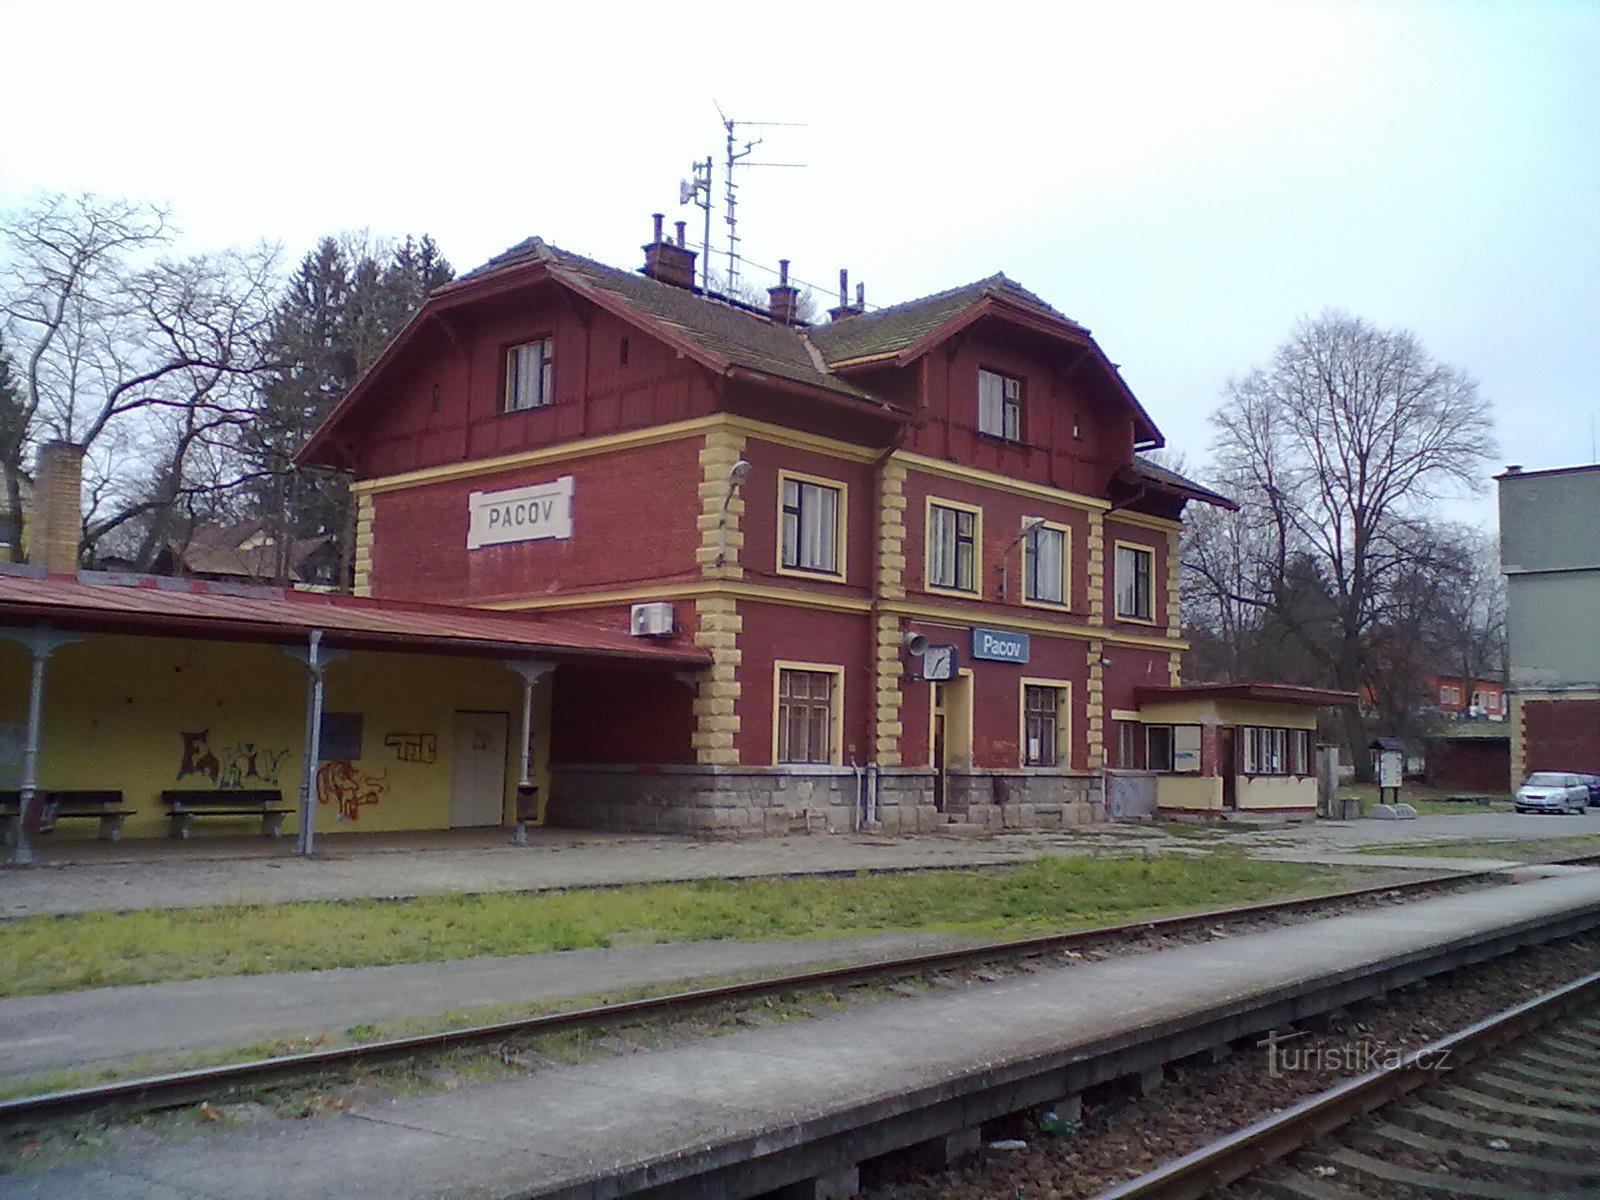 2. Gare ferroviaire de Pacov, point de départ et d'arrivée de notre randonnée.